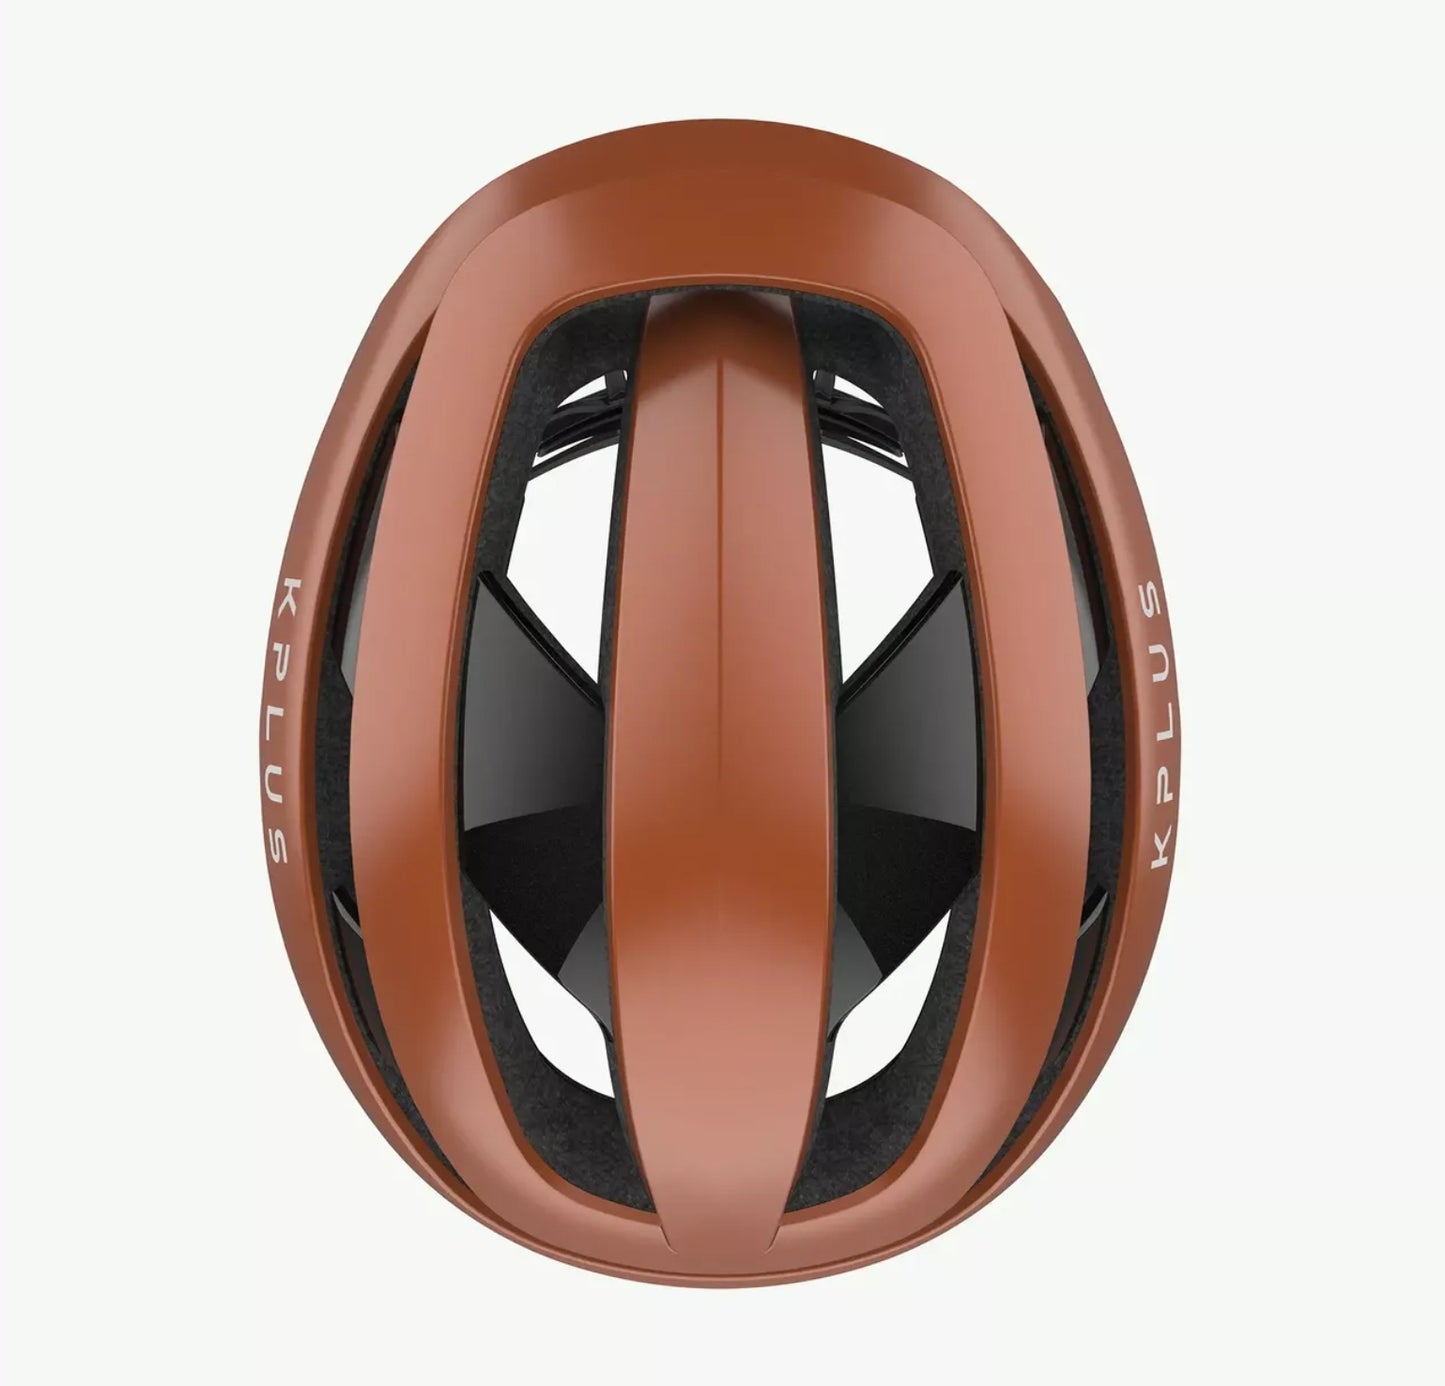 KPLUS Alpha Helmet